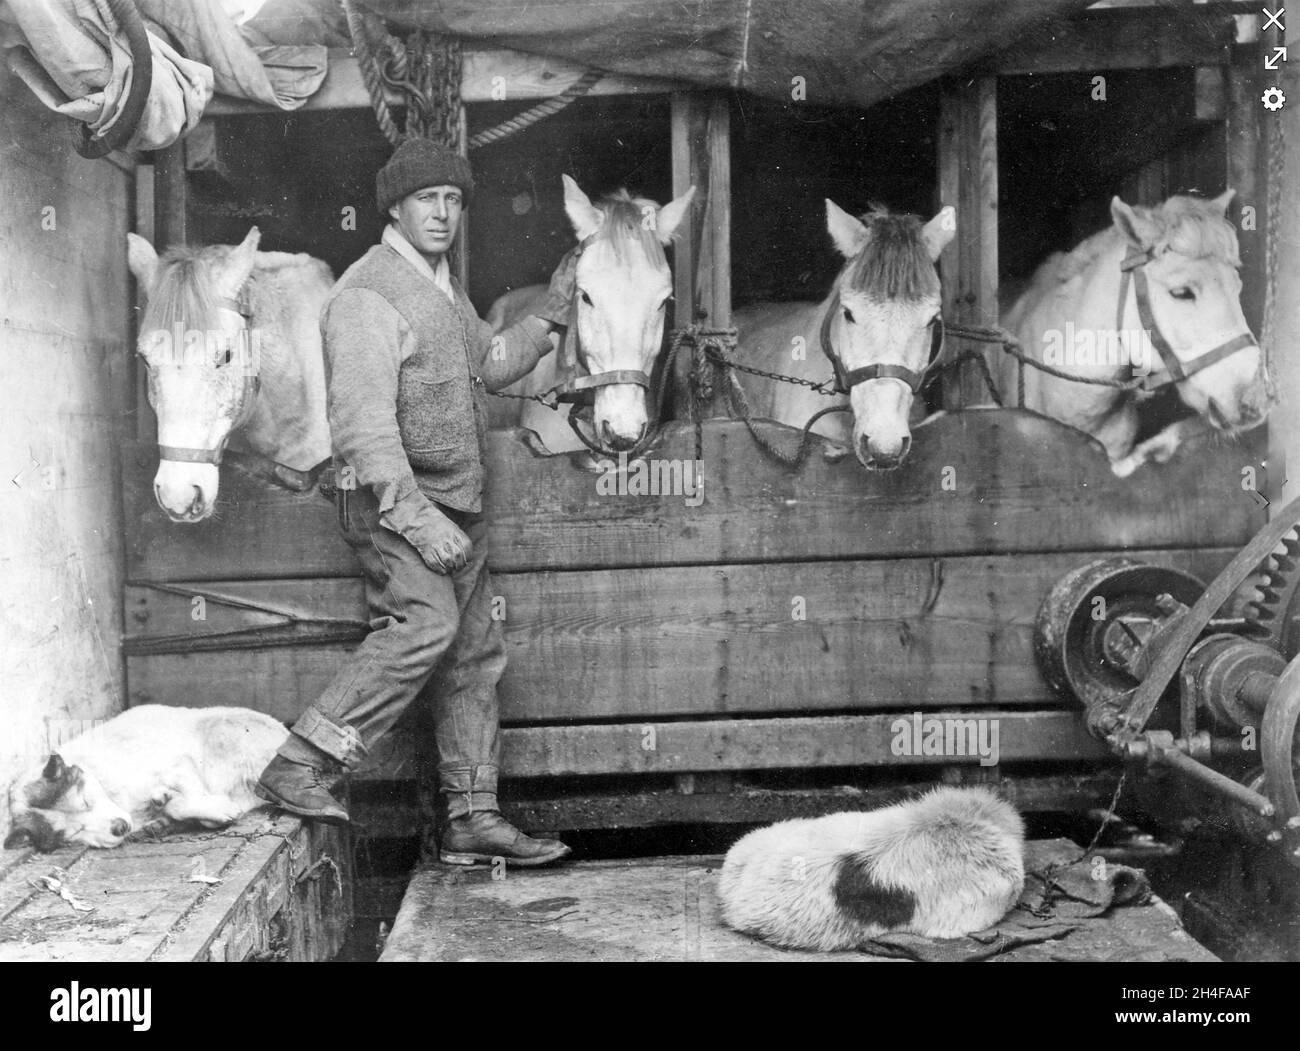 LAWRENCE OATES (1880-1912) Offizier der britischen Armee und Antarktisforscher mit Pferden an Bord der Terra Nova während Scotts unglücklicher Expedition im Jahr 1911.Foto: Herbert Ponting Stockfoto